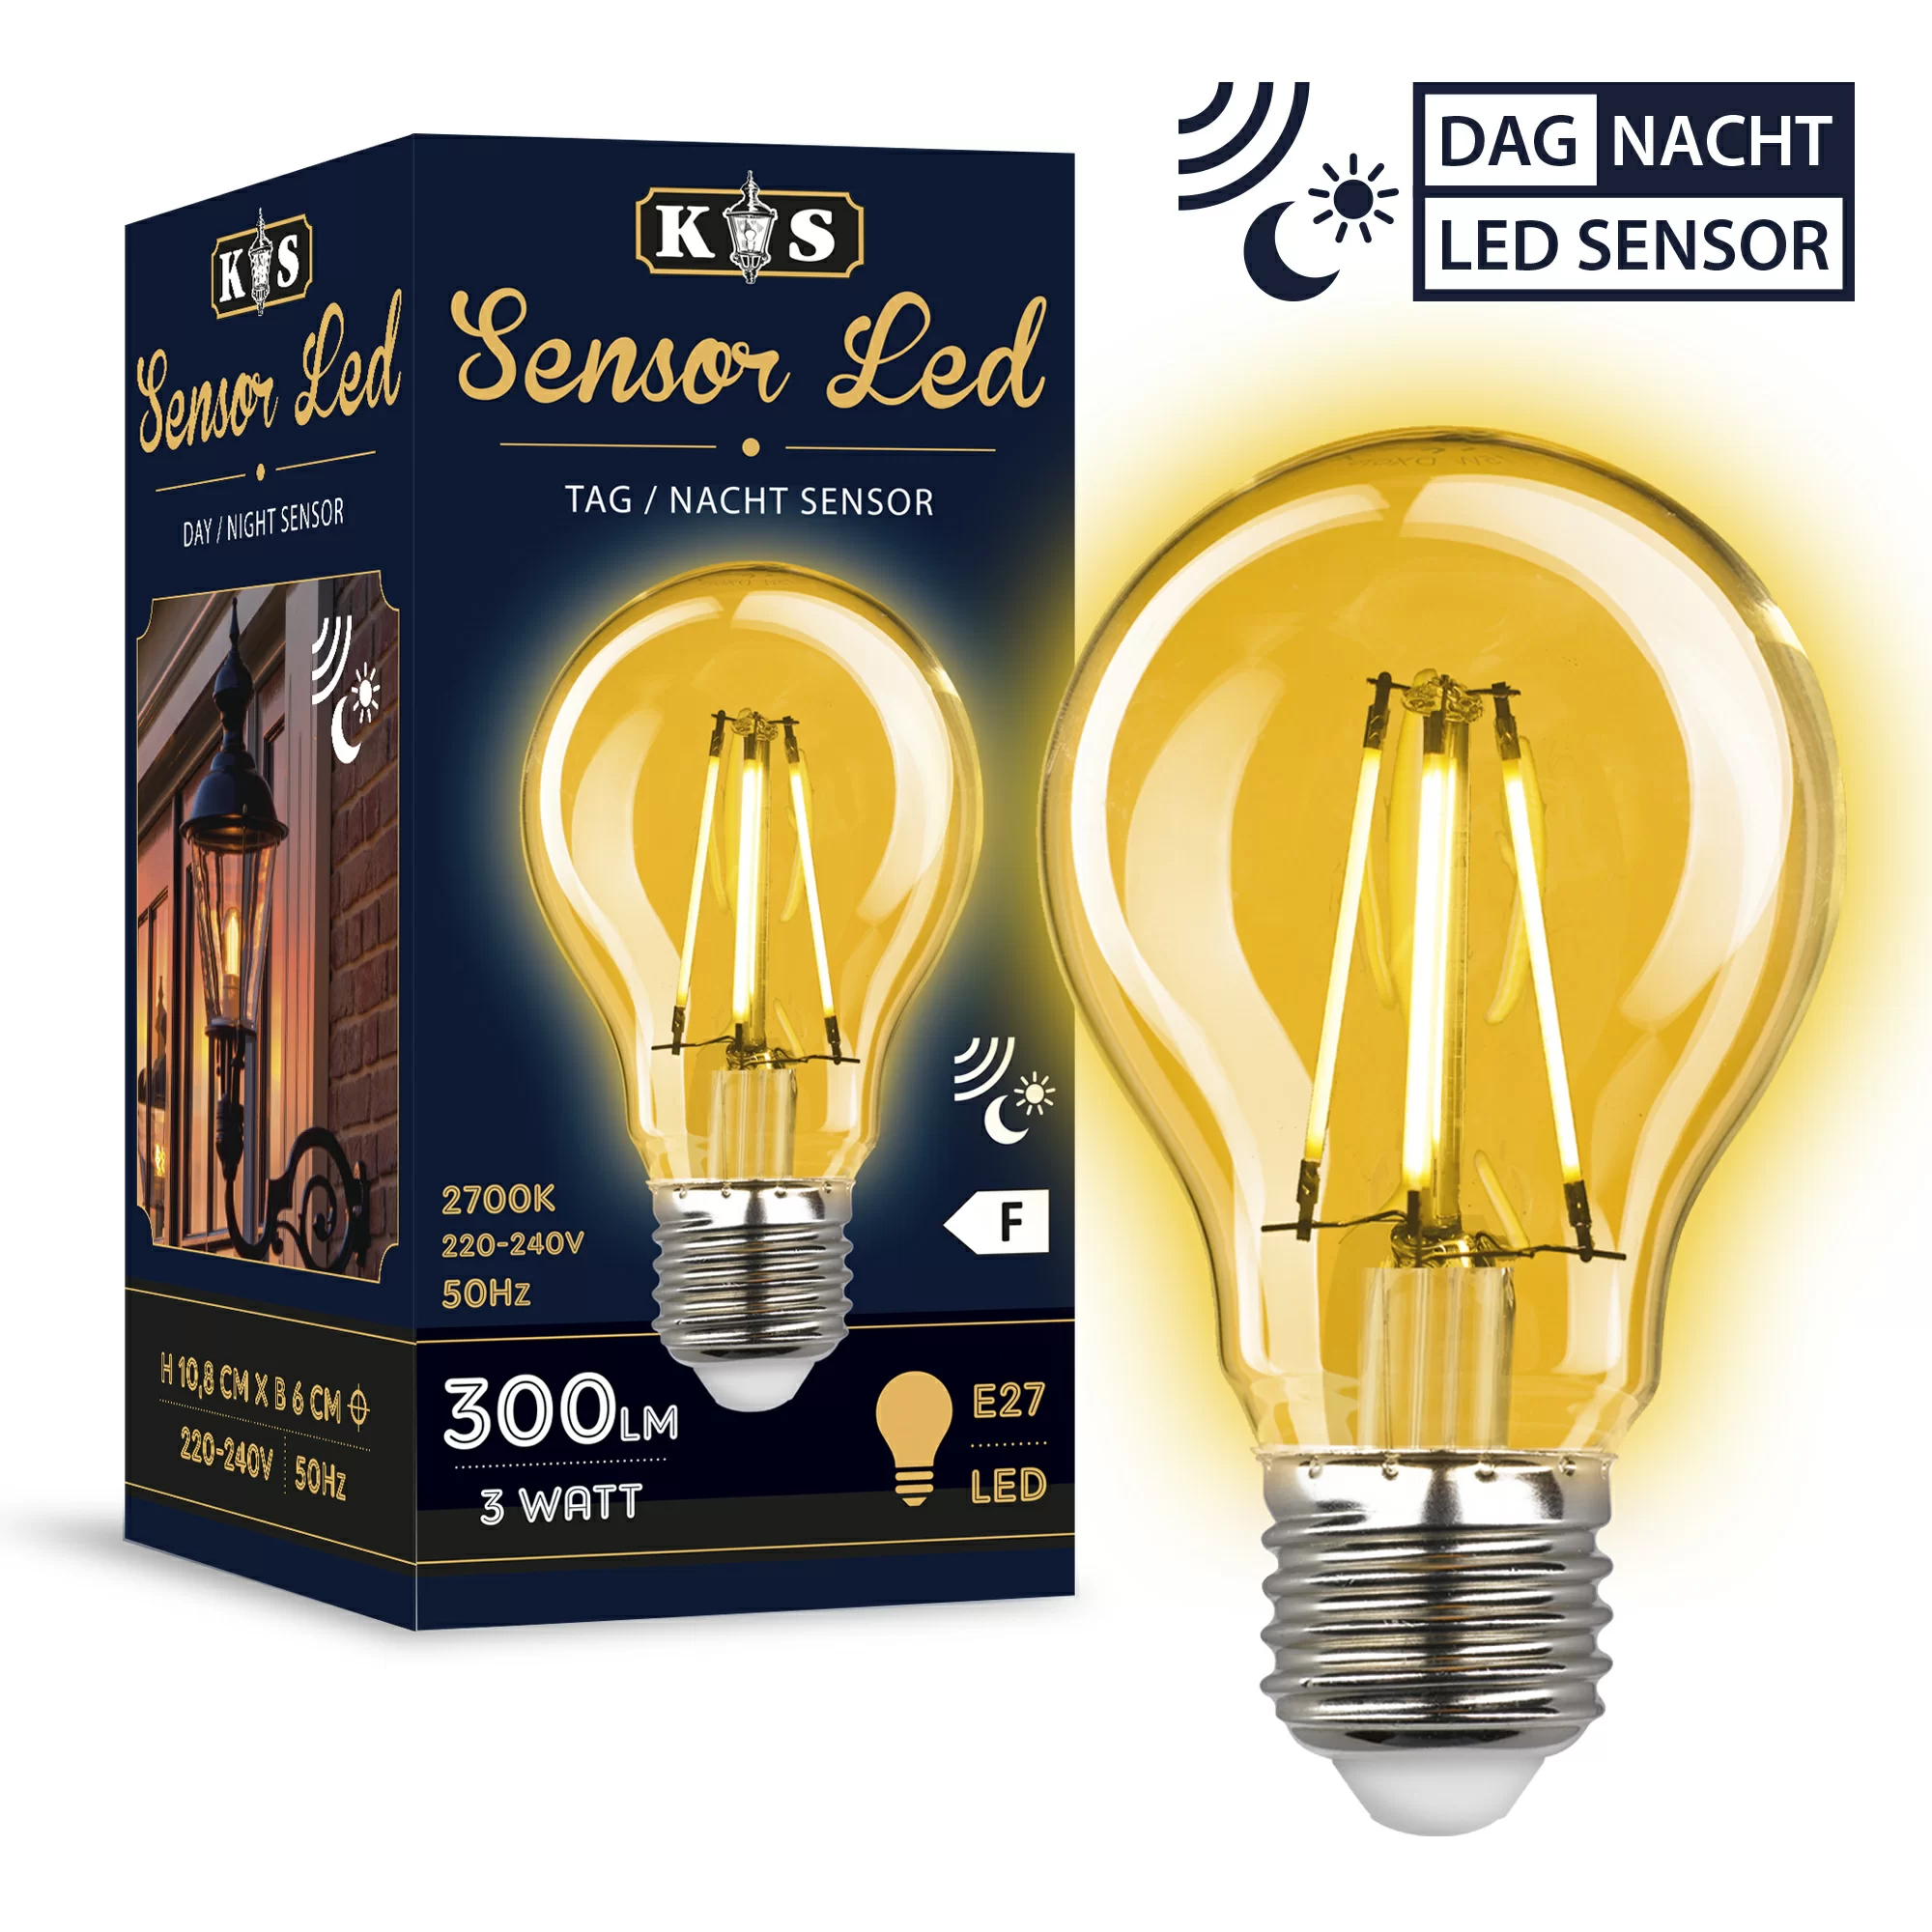 Sensor light | Official site KS outdoor company